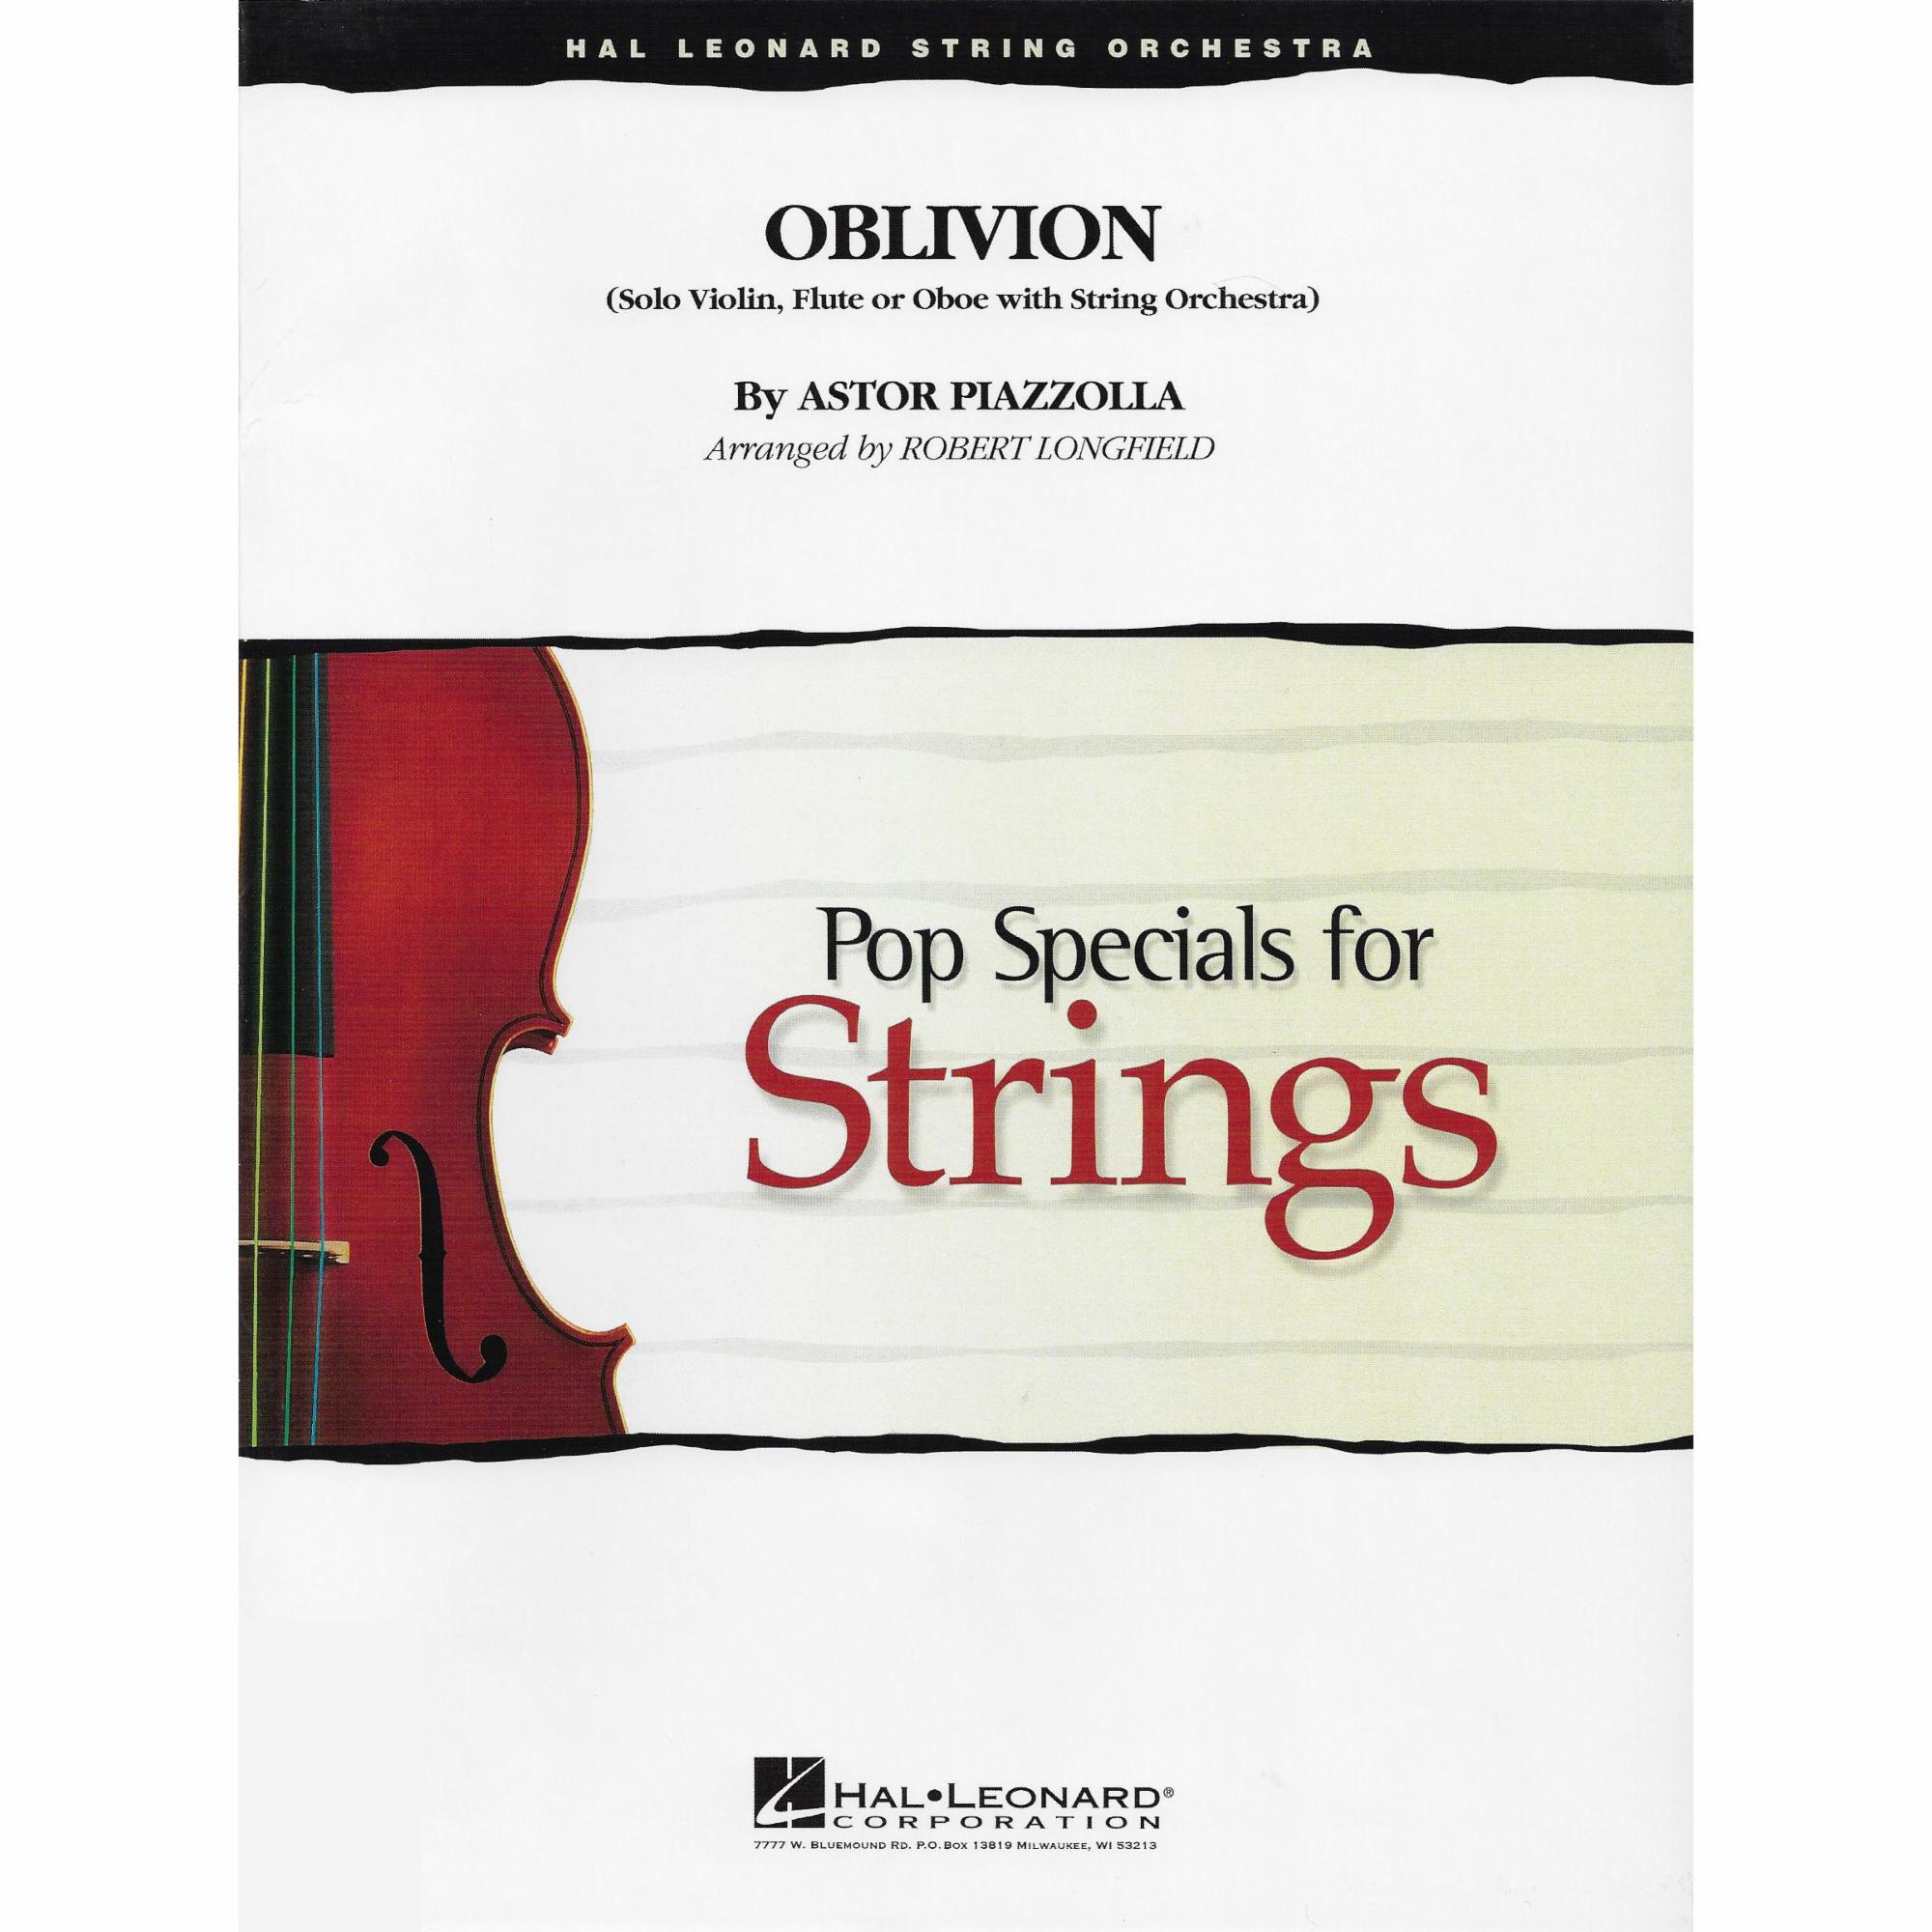 Oblivion for String Orchestra